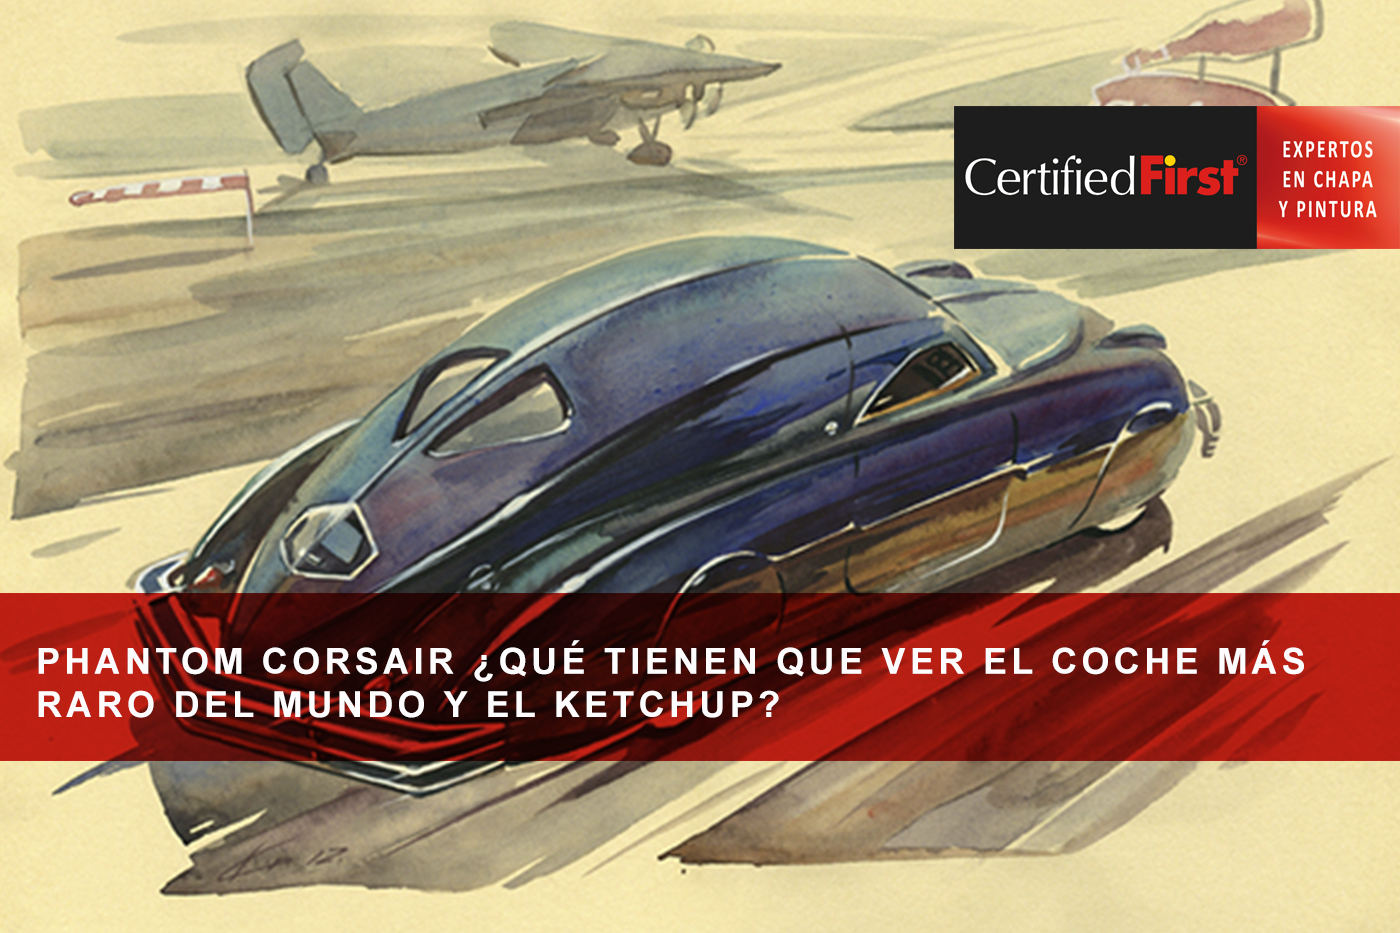 Phantom Corsair ¿qué tienen que ver el coche más raro del mundo y el ketchup?